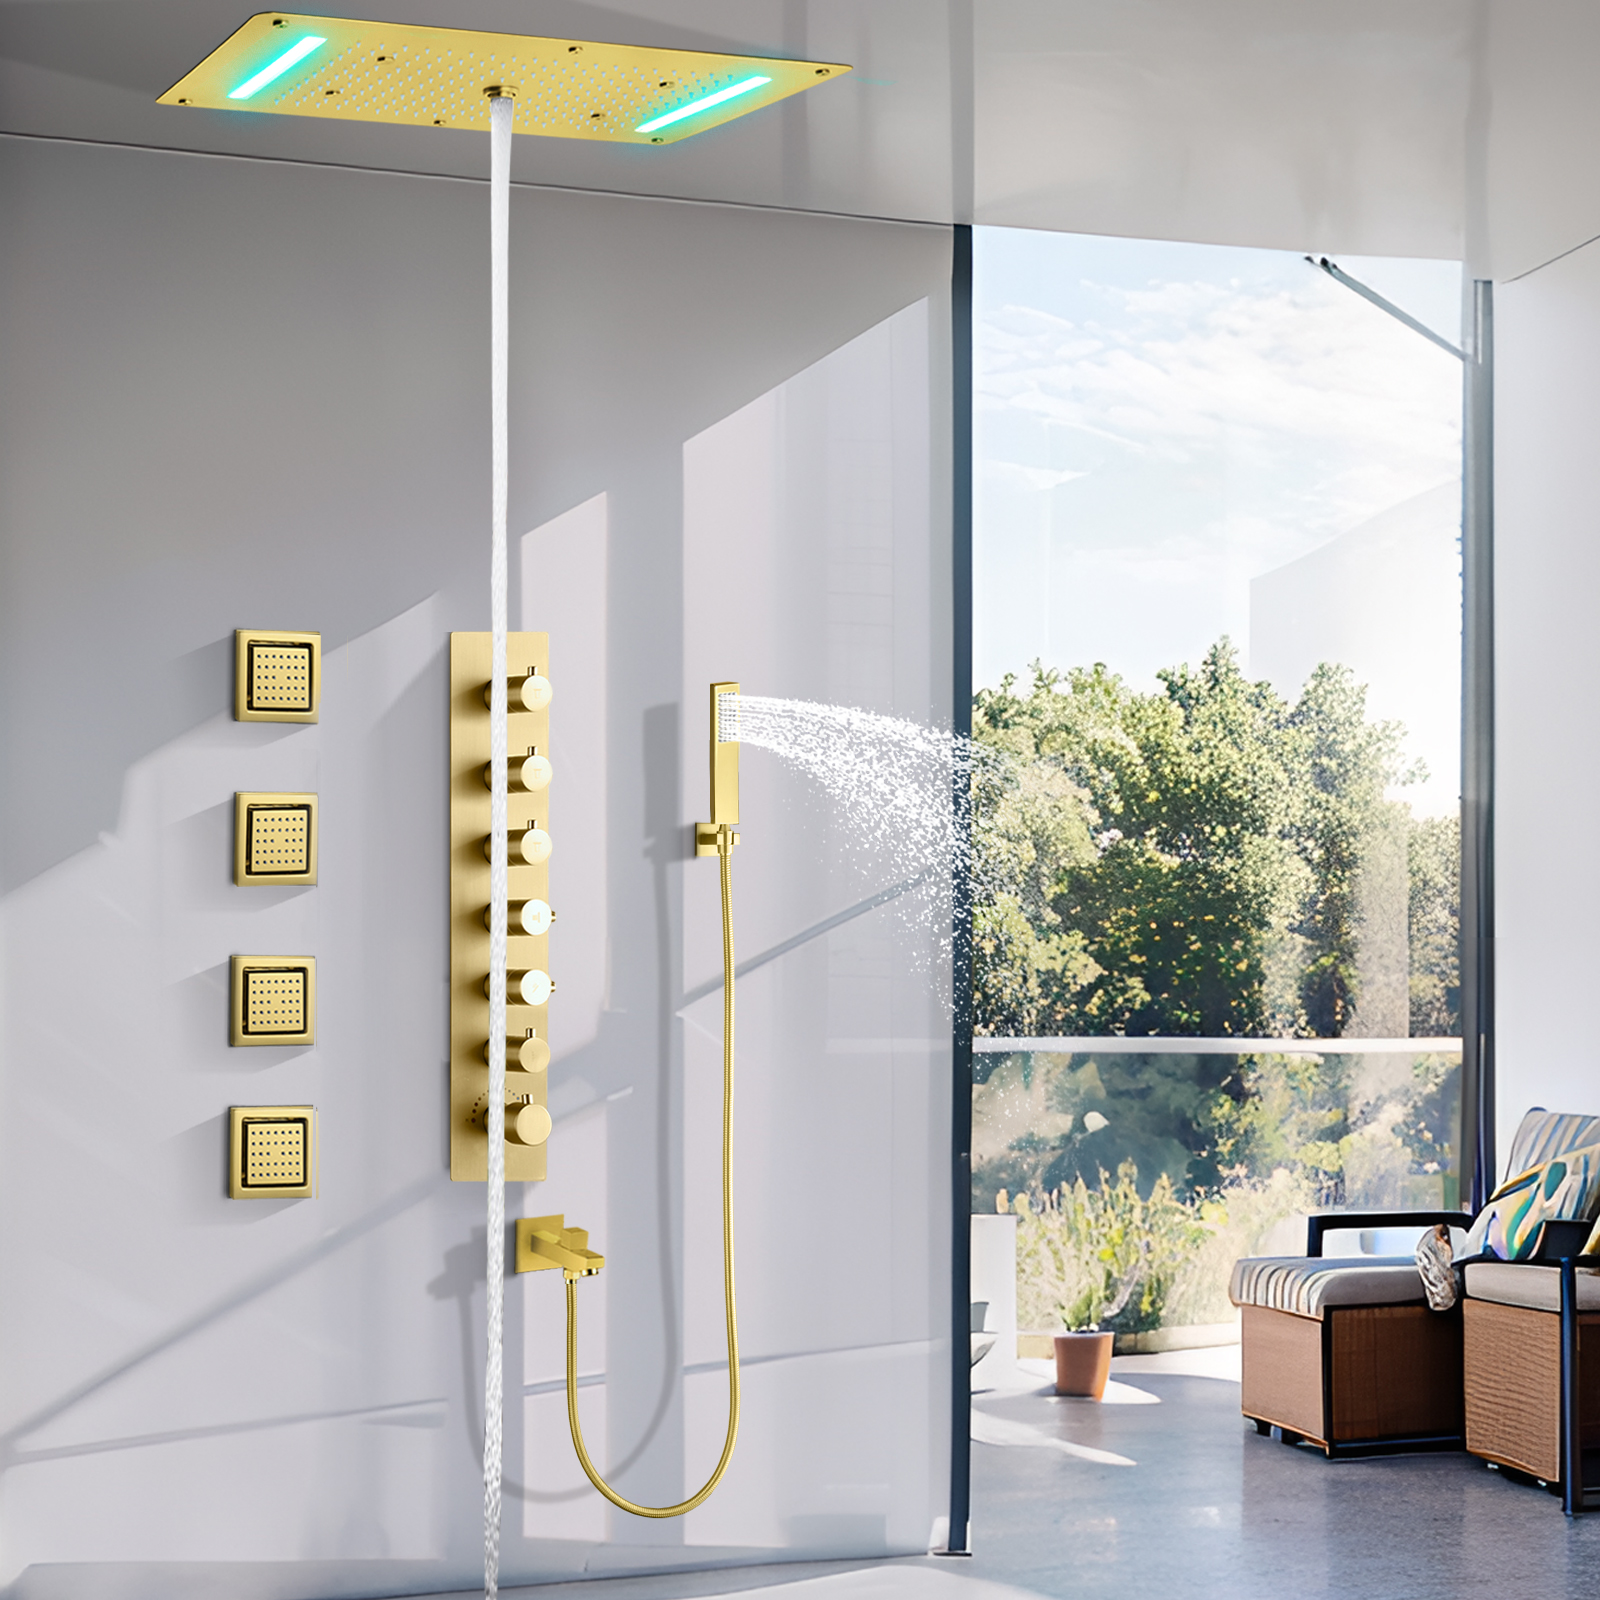 70x38cm Brushed Gold Shower Suite Hanging Blender Hidden LED Shower Room Bathroom Water Faucet Massage System